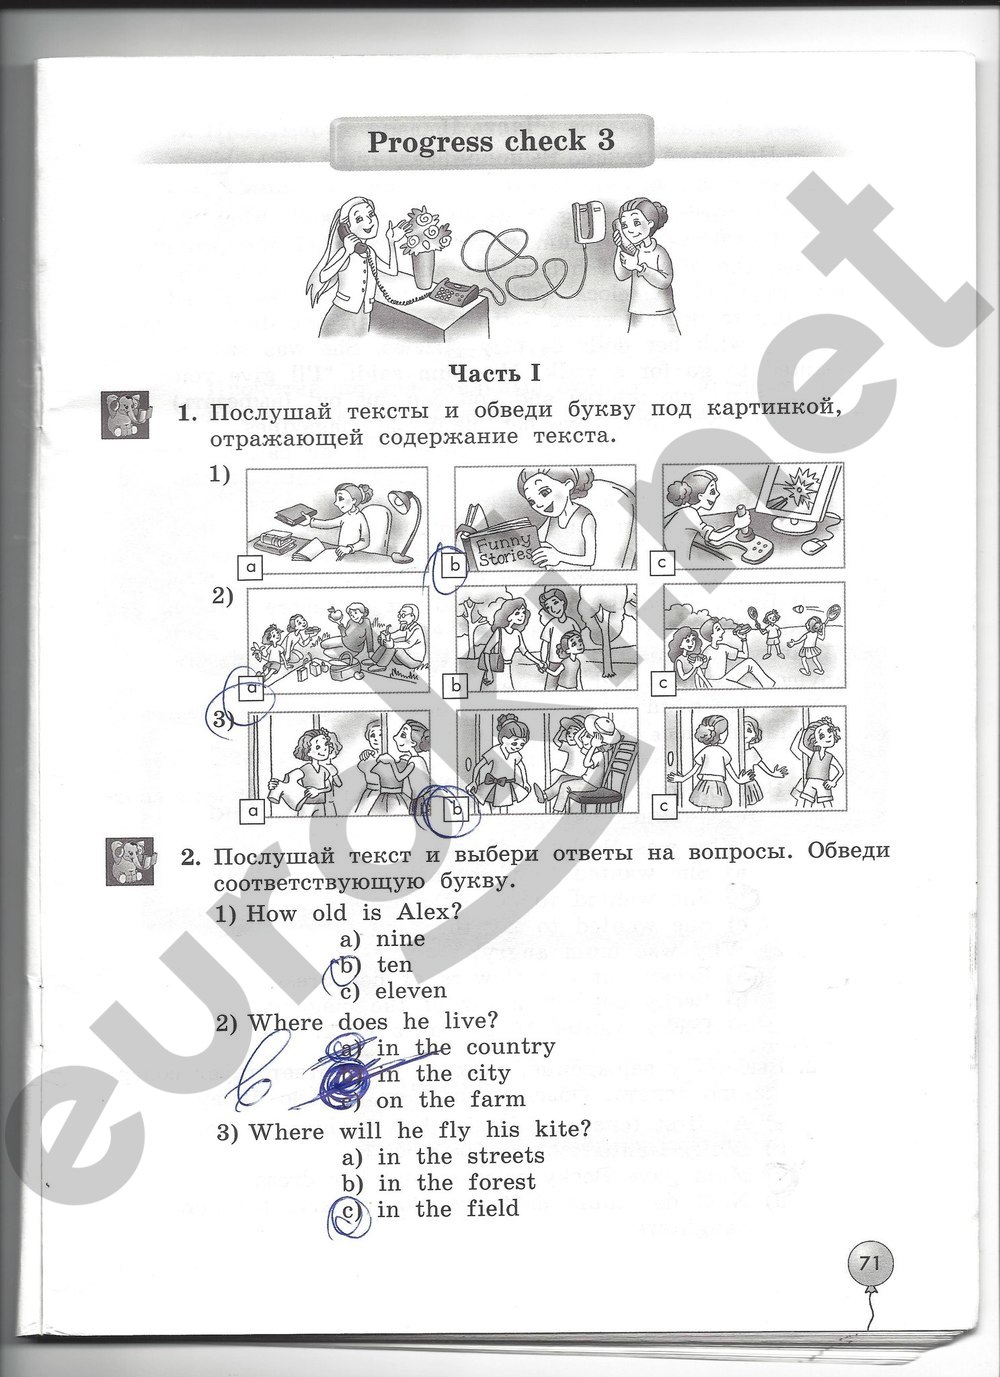 Биболетова денисенко трубанева английский язык четвертый класс. 3 Класс progress check рабочая тетрадь биболетова.